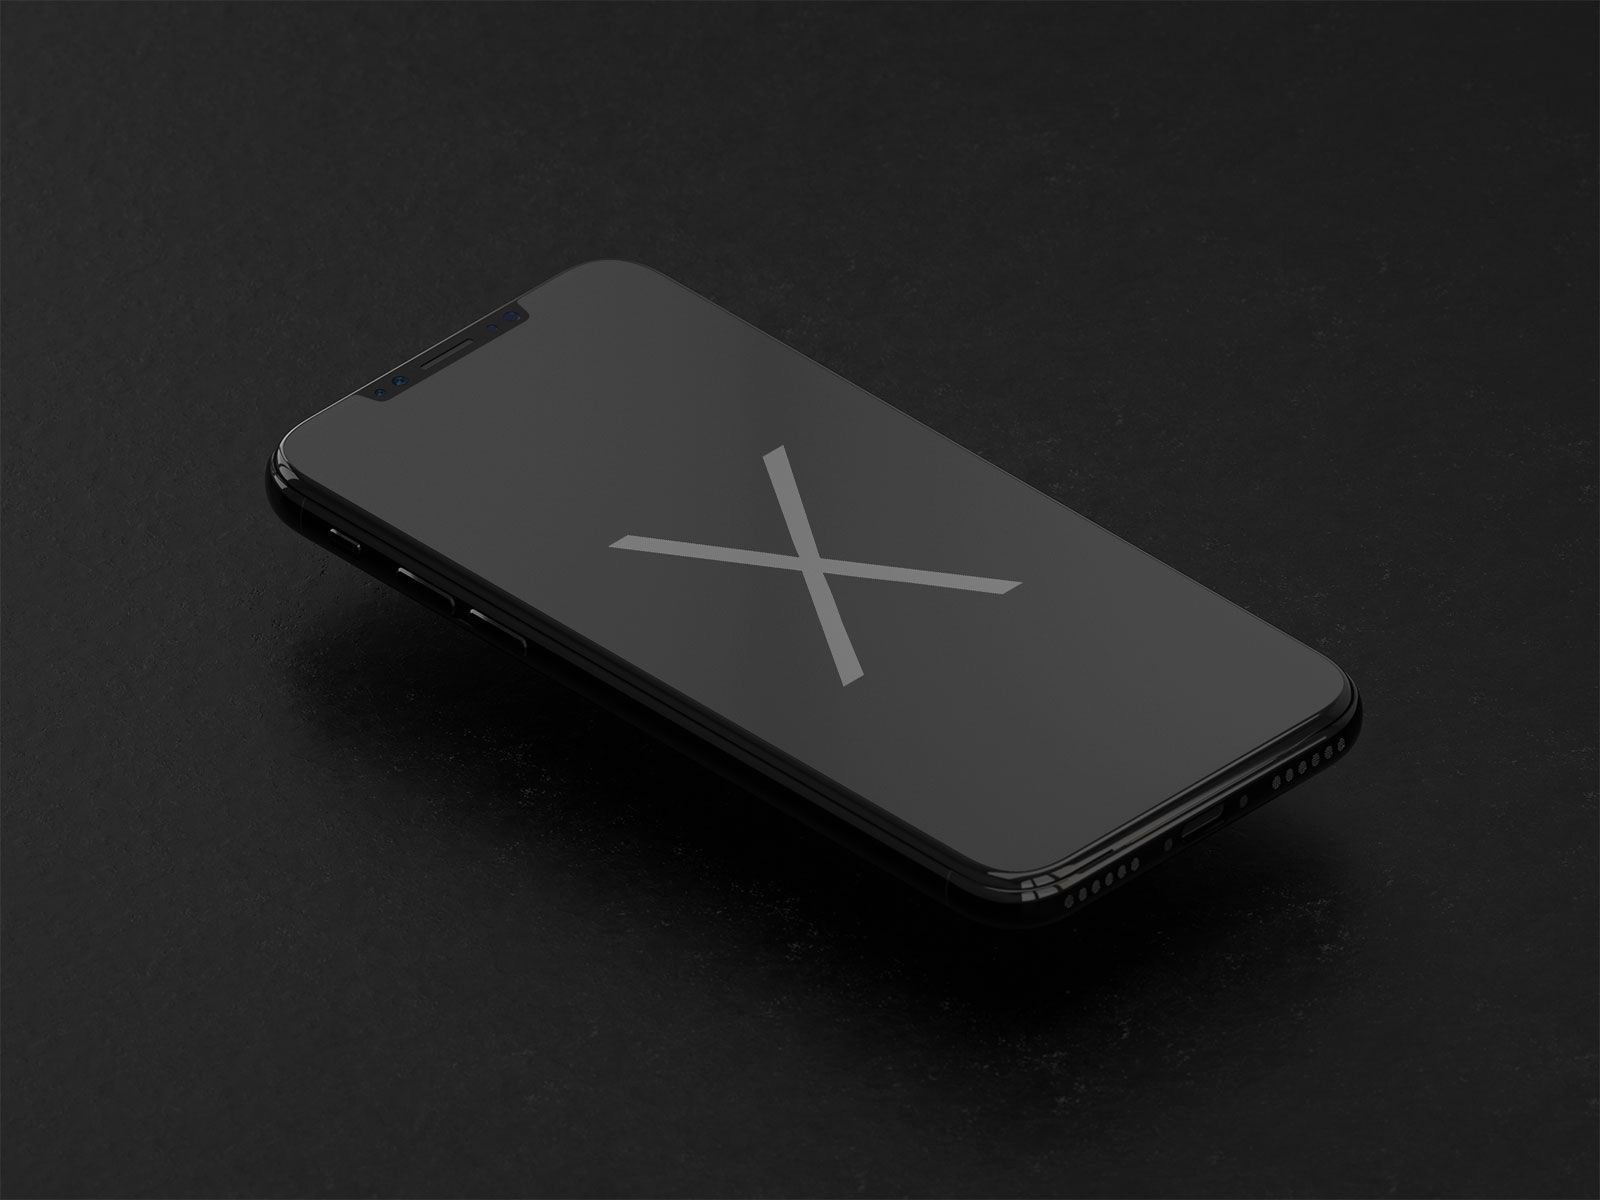 Black Iphone 5 Fresh Black X Wallpaper Lovely Iphone - Iphone X Black Mockup Free , HD Wallpaper & Backgrounds